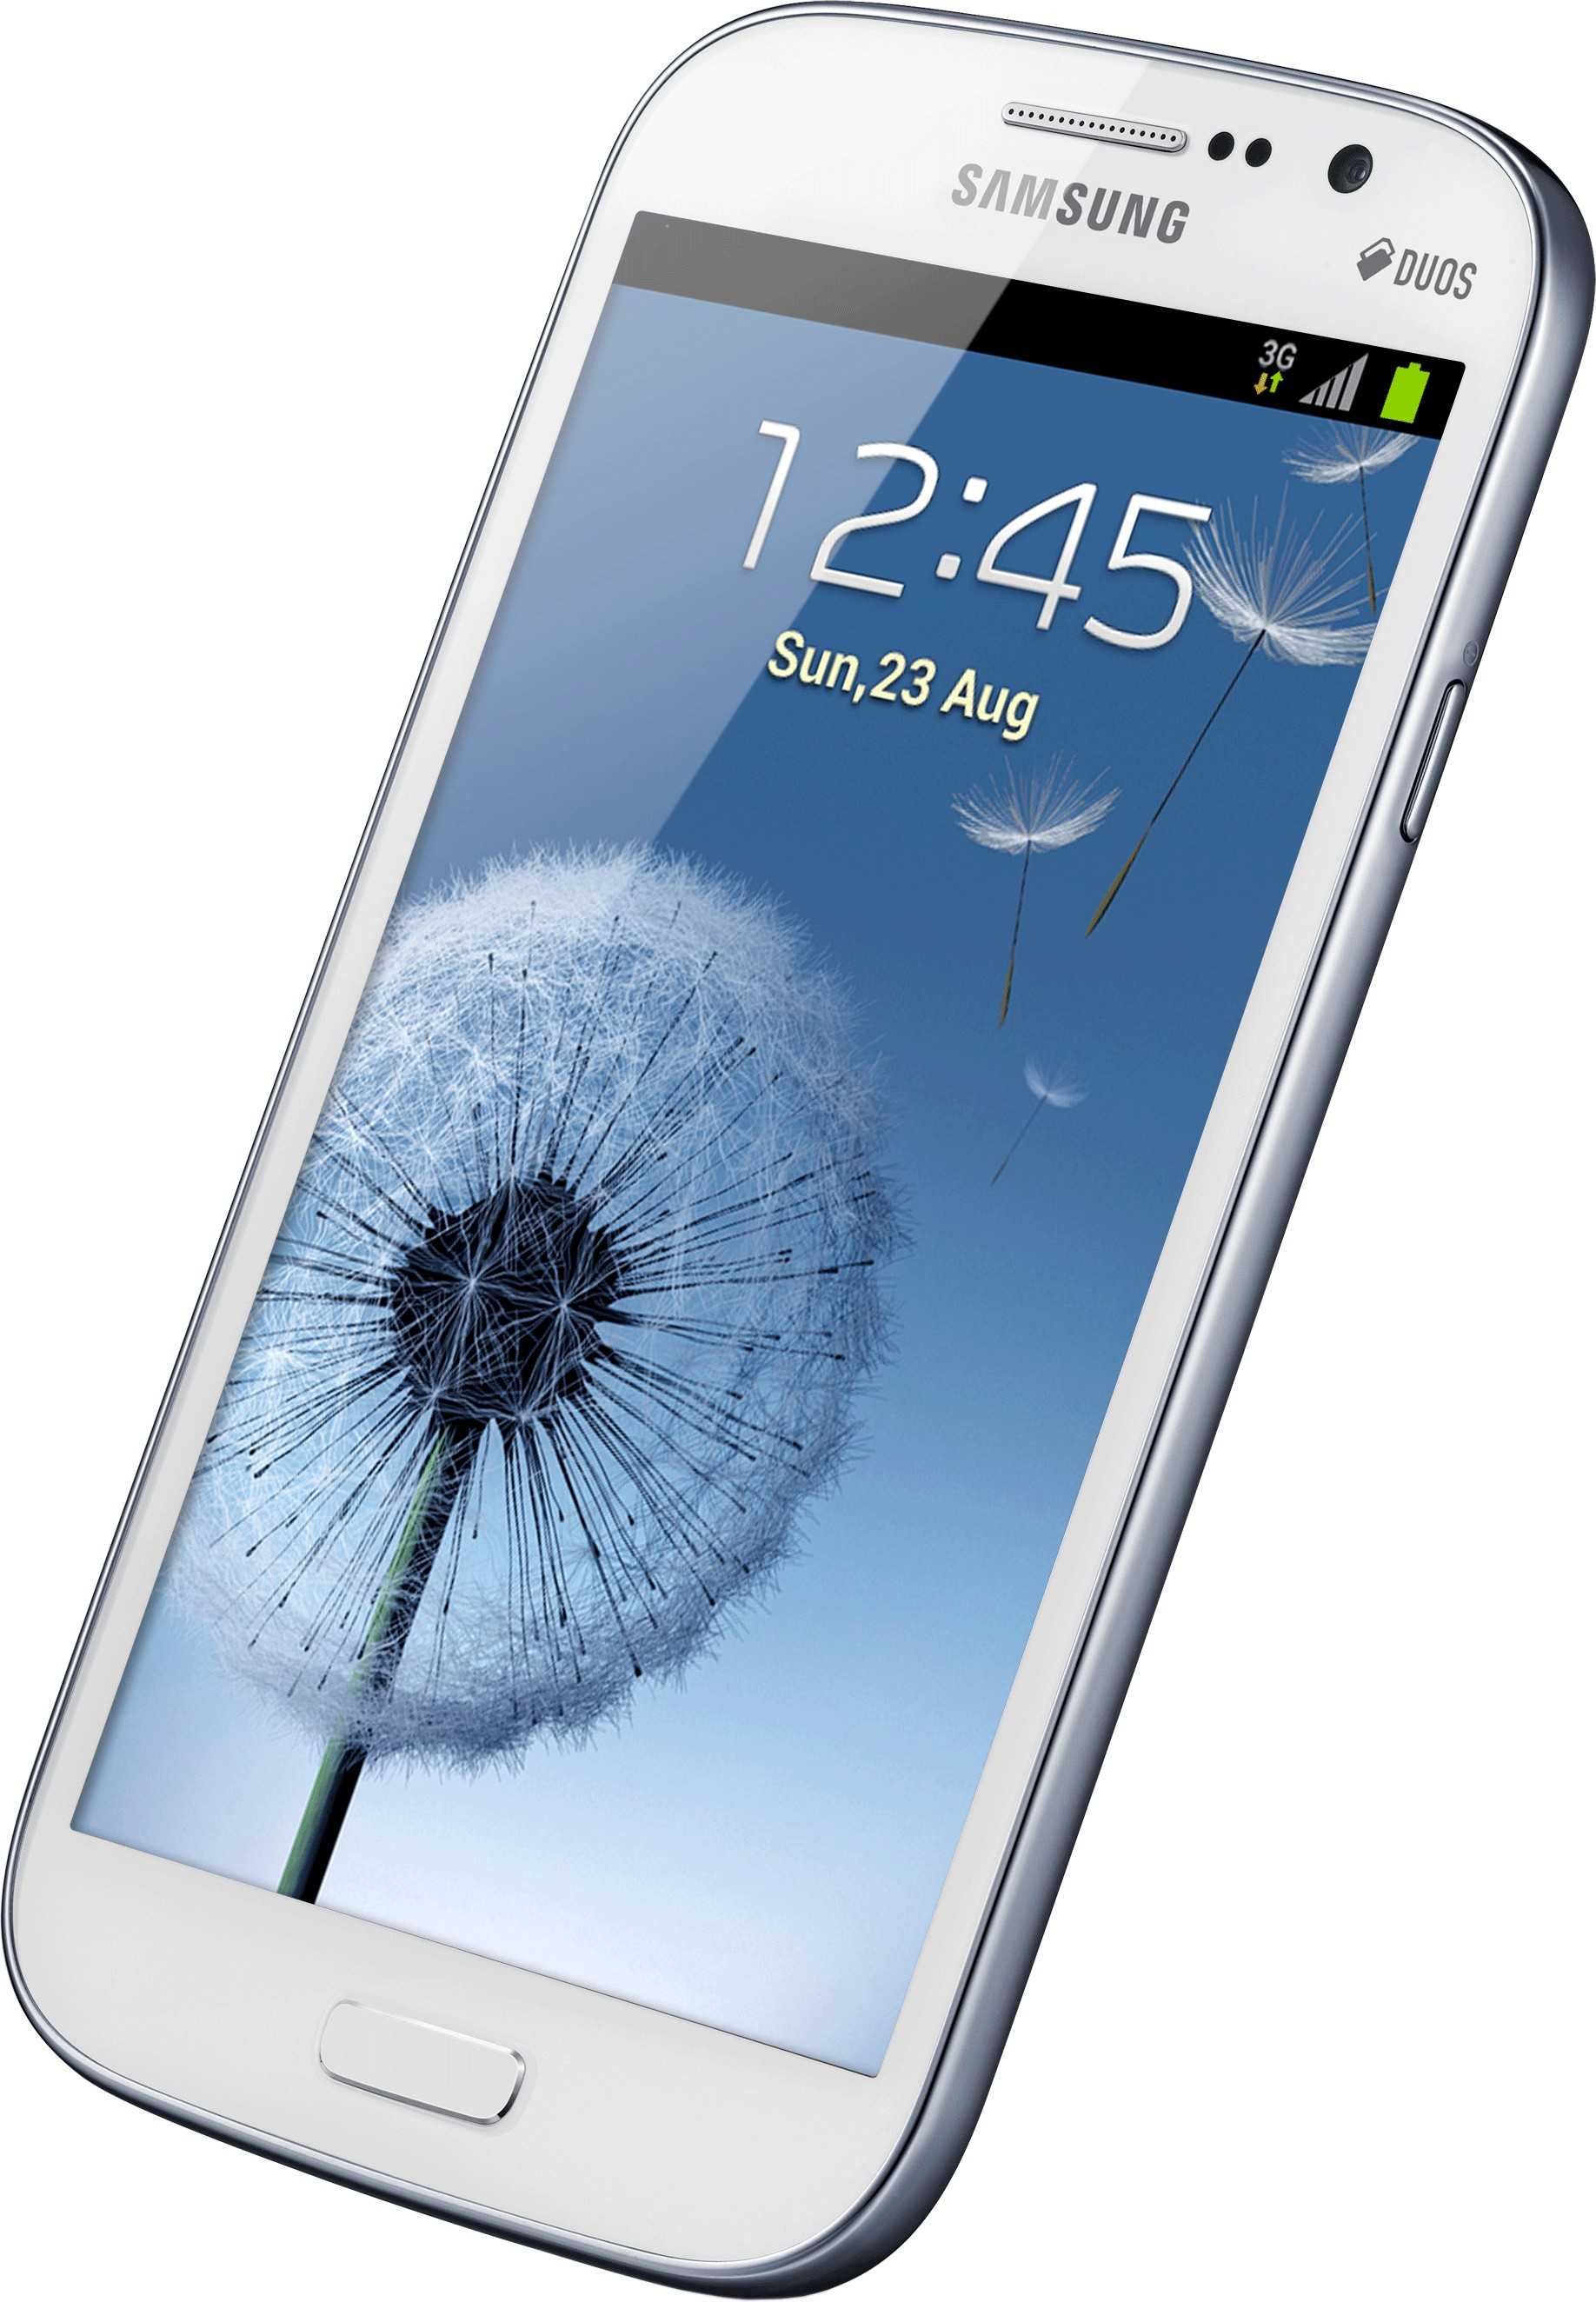 Мобильный телефон Samsung Galaxy Grand Duos - подробные характеристики обзоры видео фото Цены в интернет-магазинах где можно купить мобильный телефон Samsung Galaxy Grand Duos